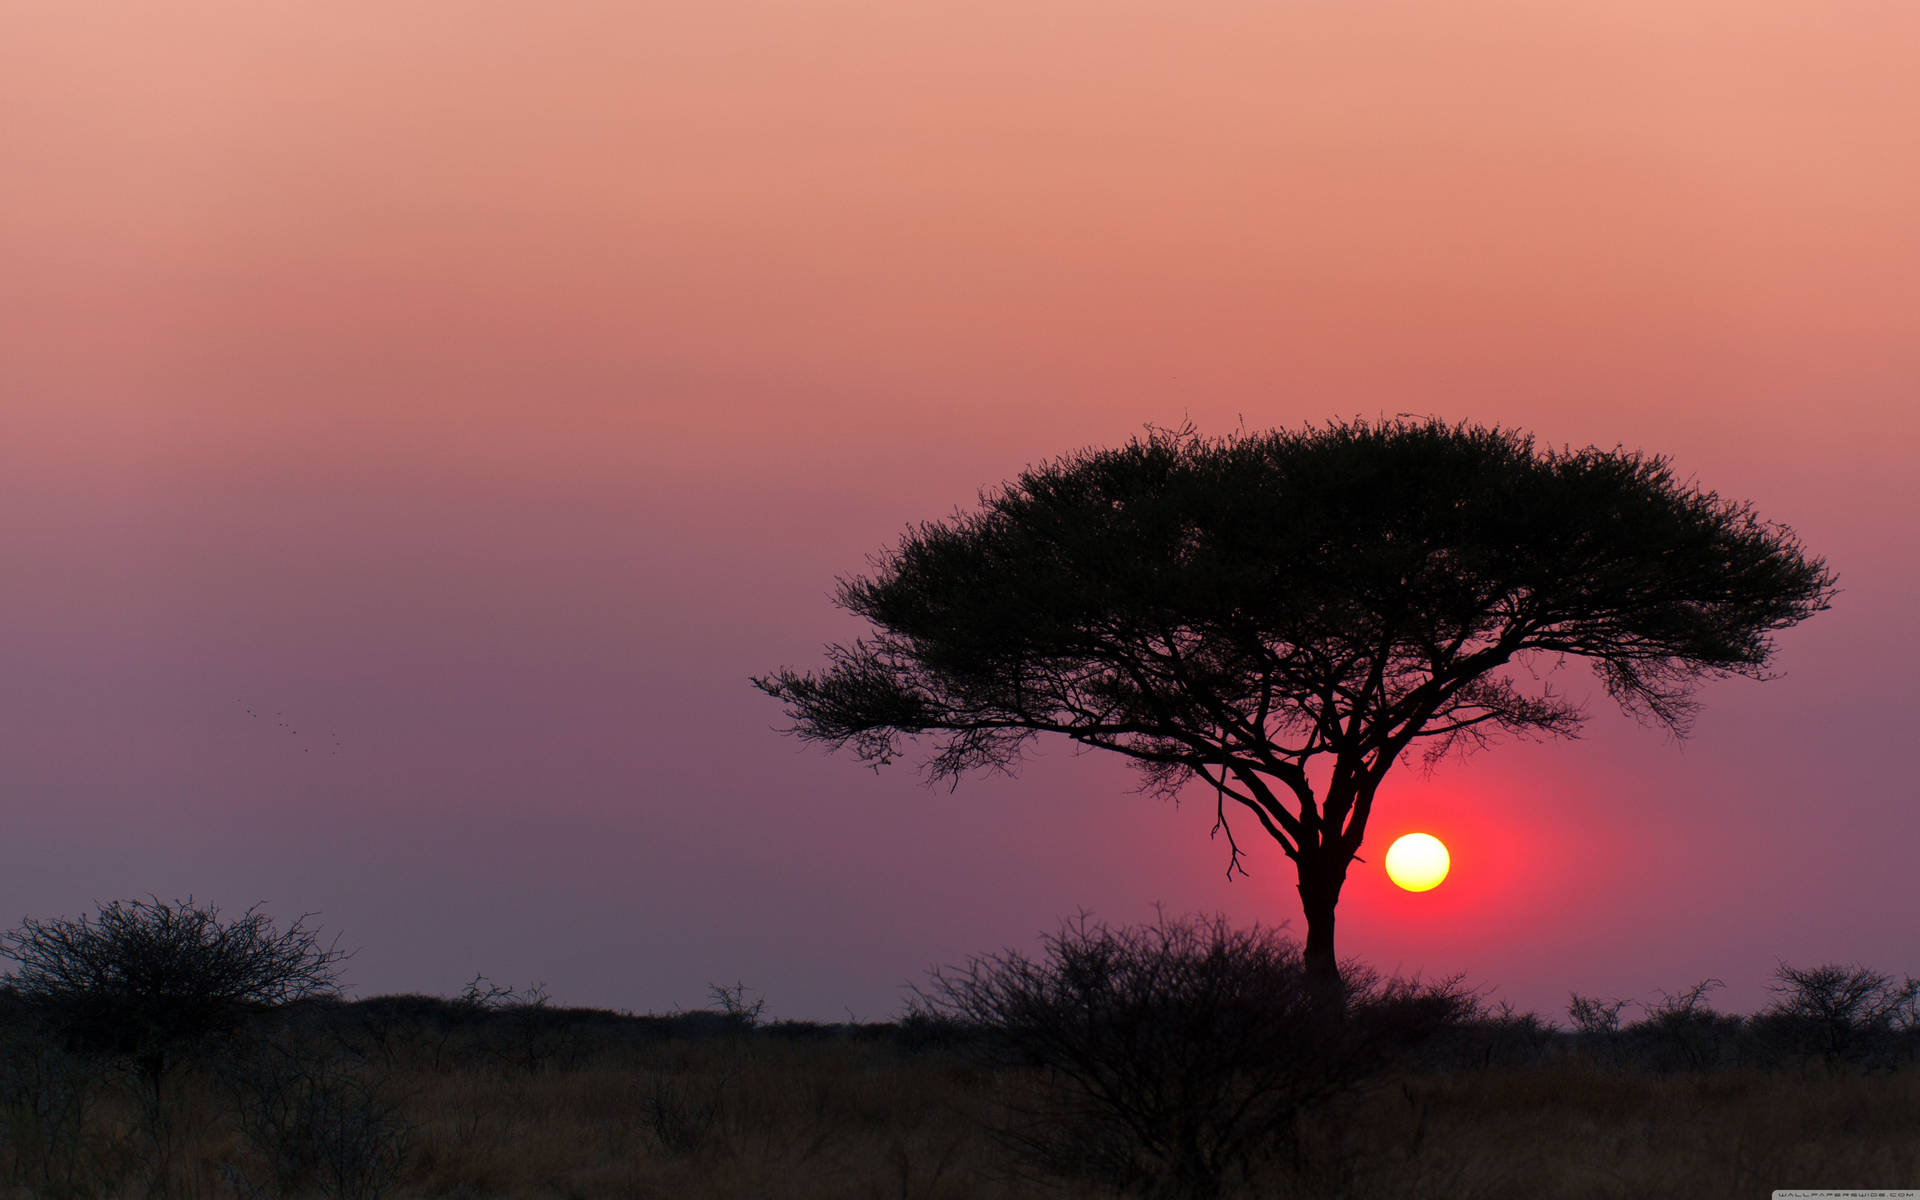 Namibia Etosha National Park